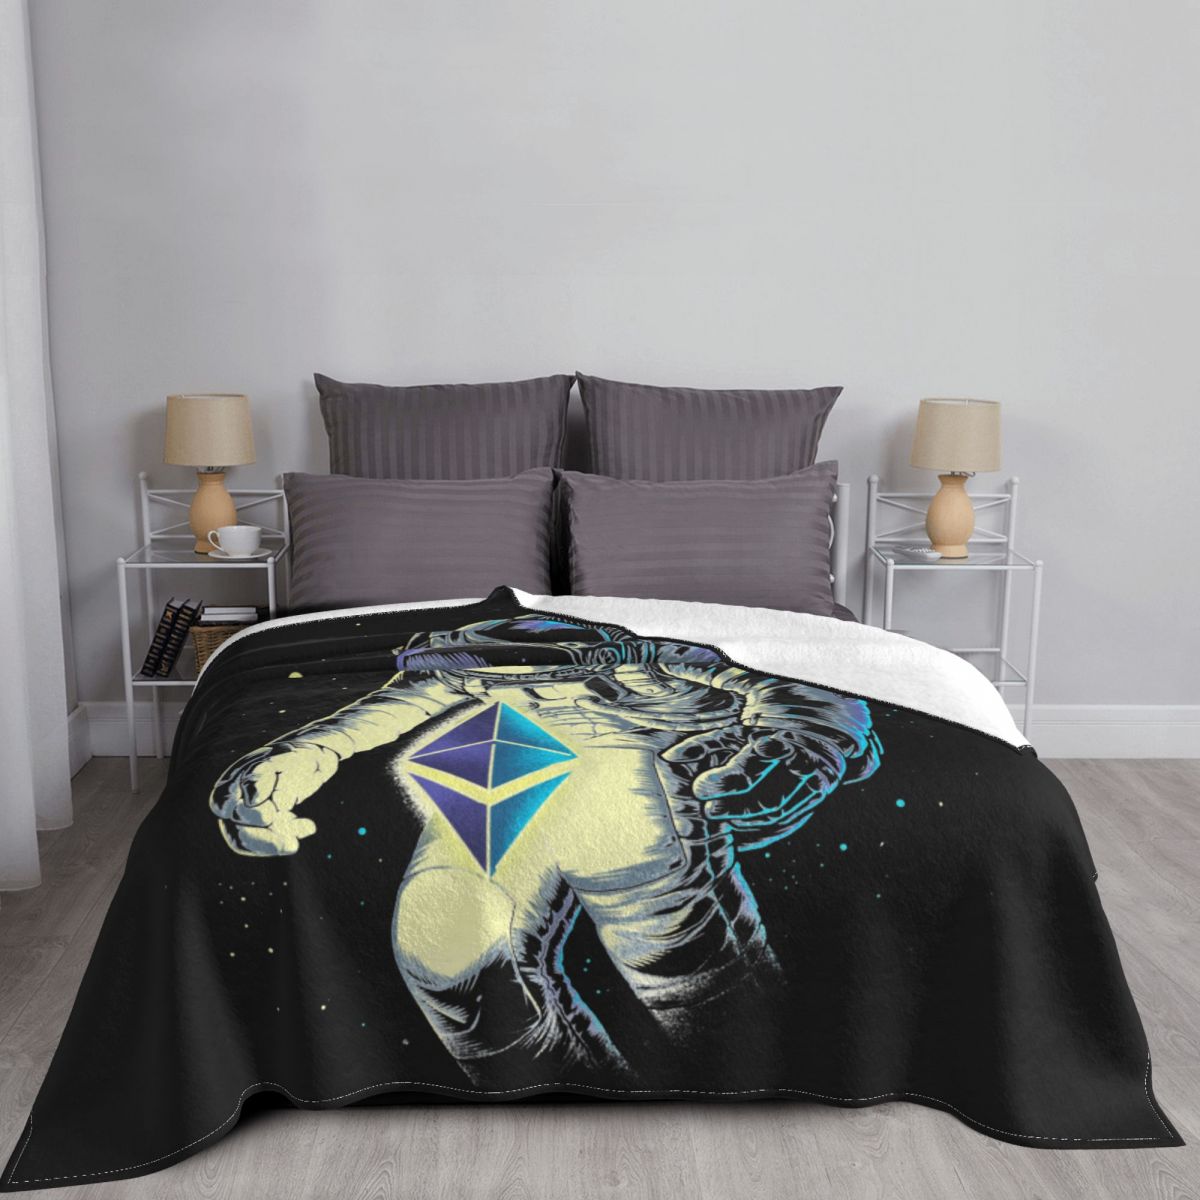 blanket ethereum blanket ethereum-themed blanket